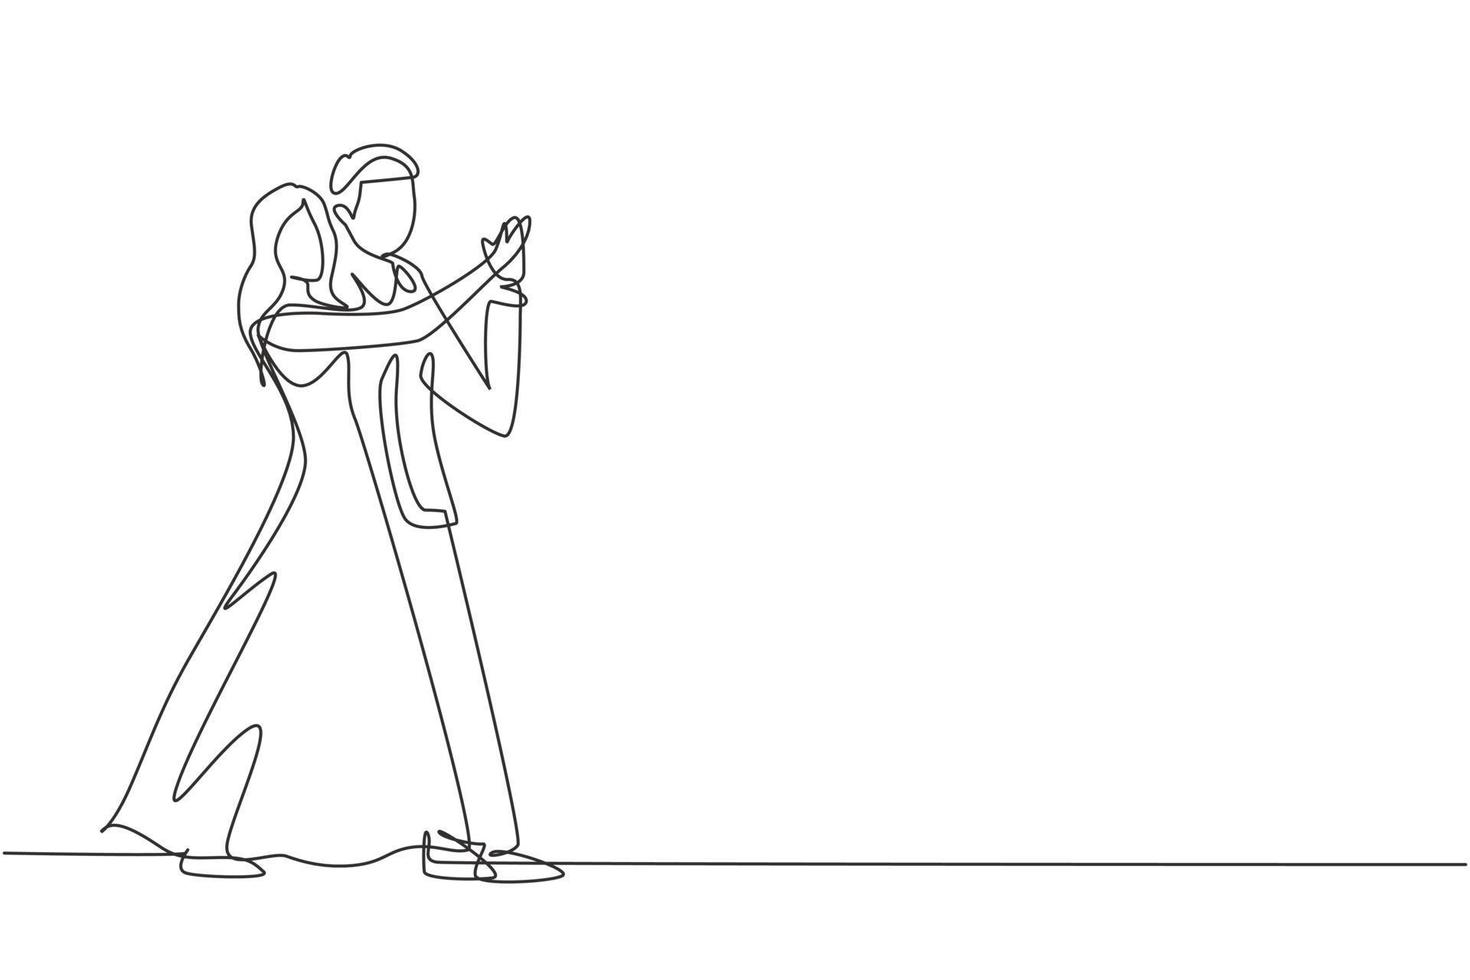 dibujo continuo de una línea romántica pareja de bailarines profesionales de hombre y mujer bailando tango, bailes de vals en la pista de baile del concurso de baile. vida feliz. Ilustración gráfica de vector de diseño de dibujo de una sola línea